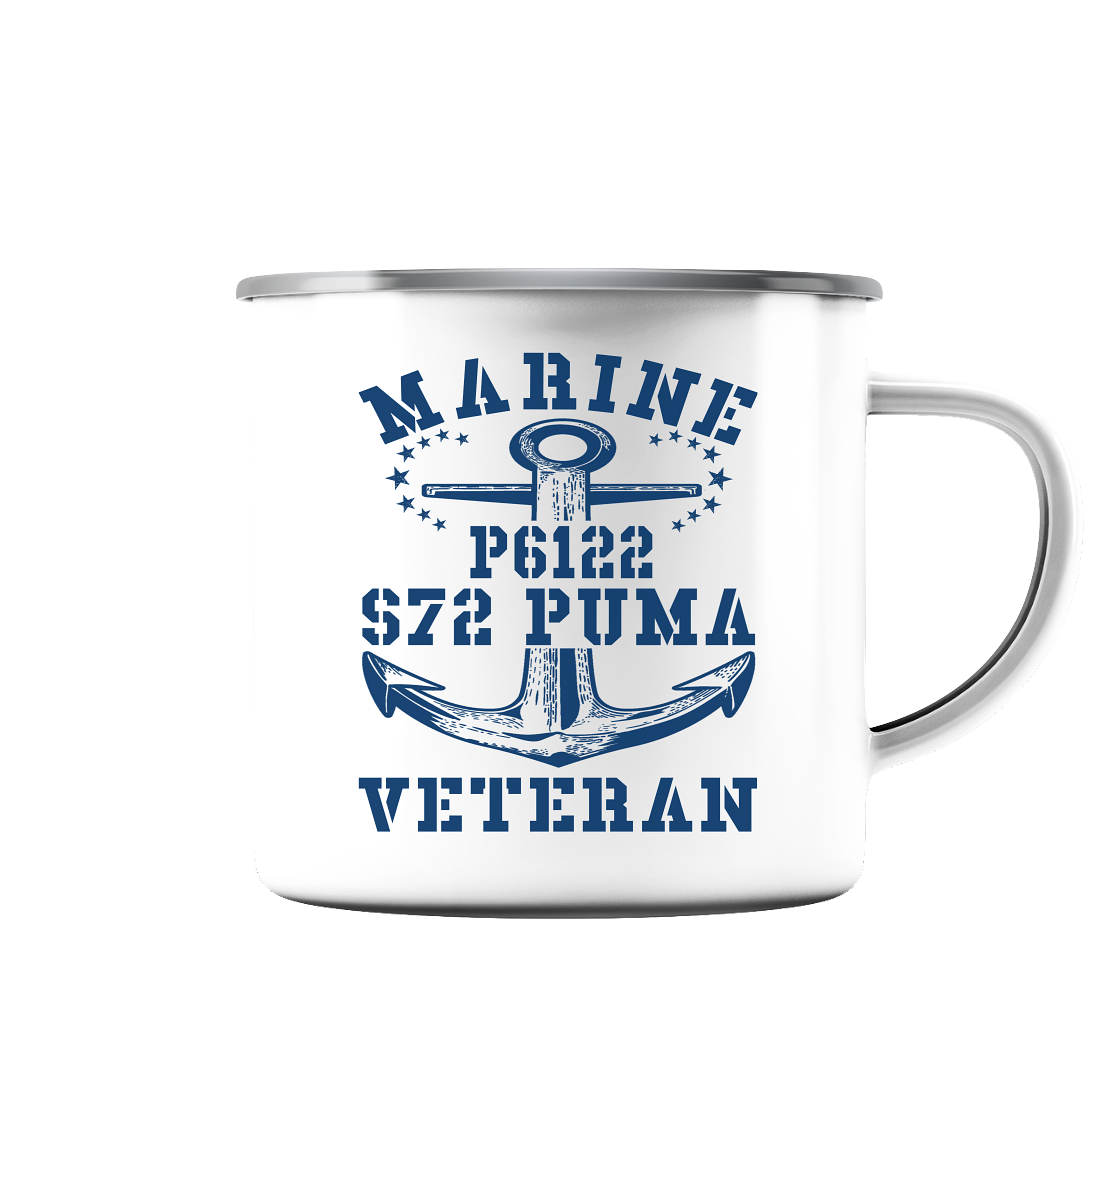 FK-Schnellboot P6122 P.U.M.A. Marine Veteran - Emaille Tasse (Silber)